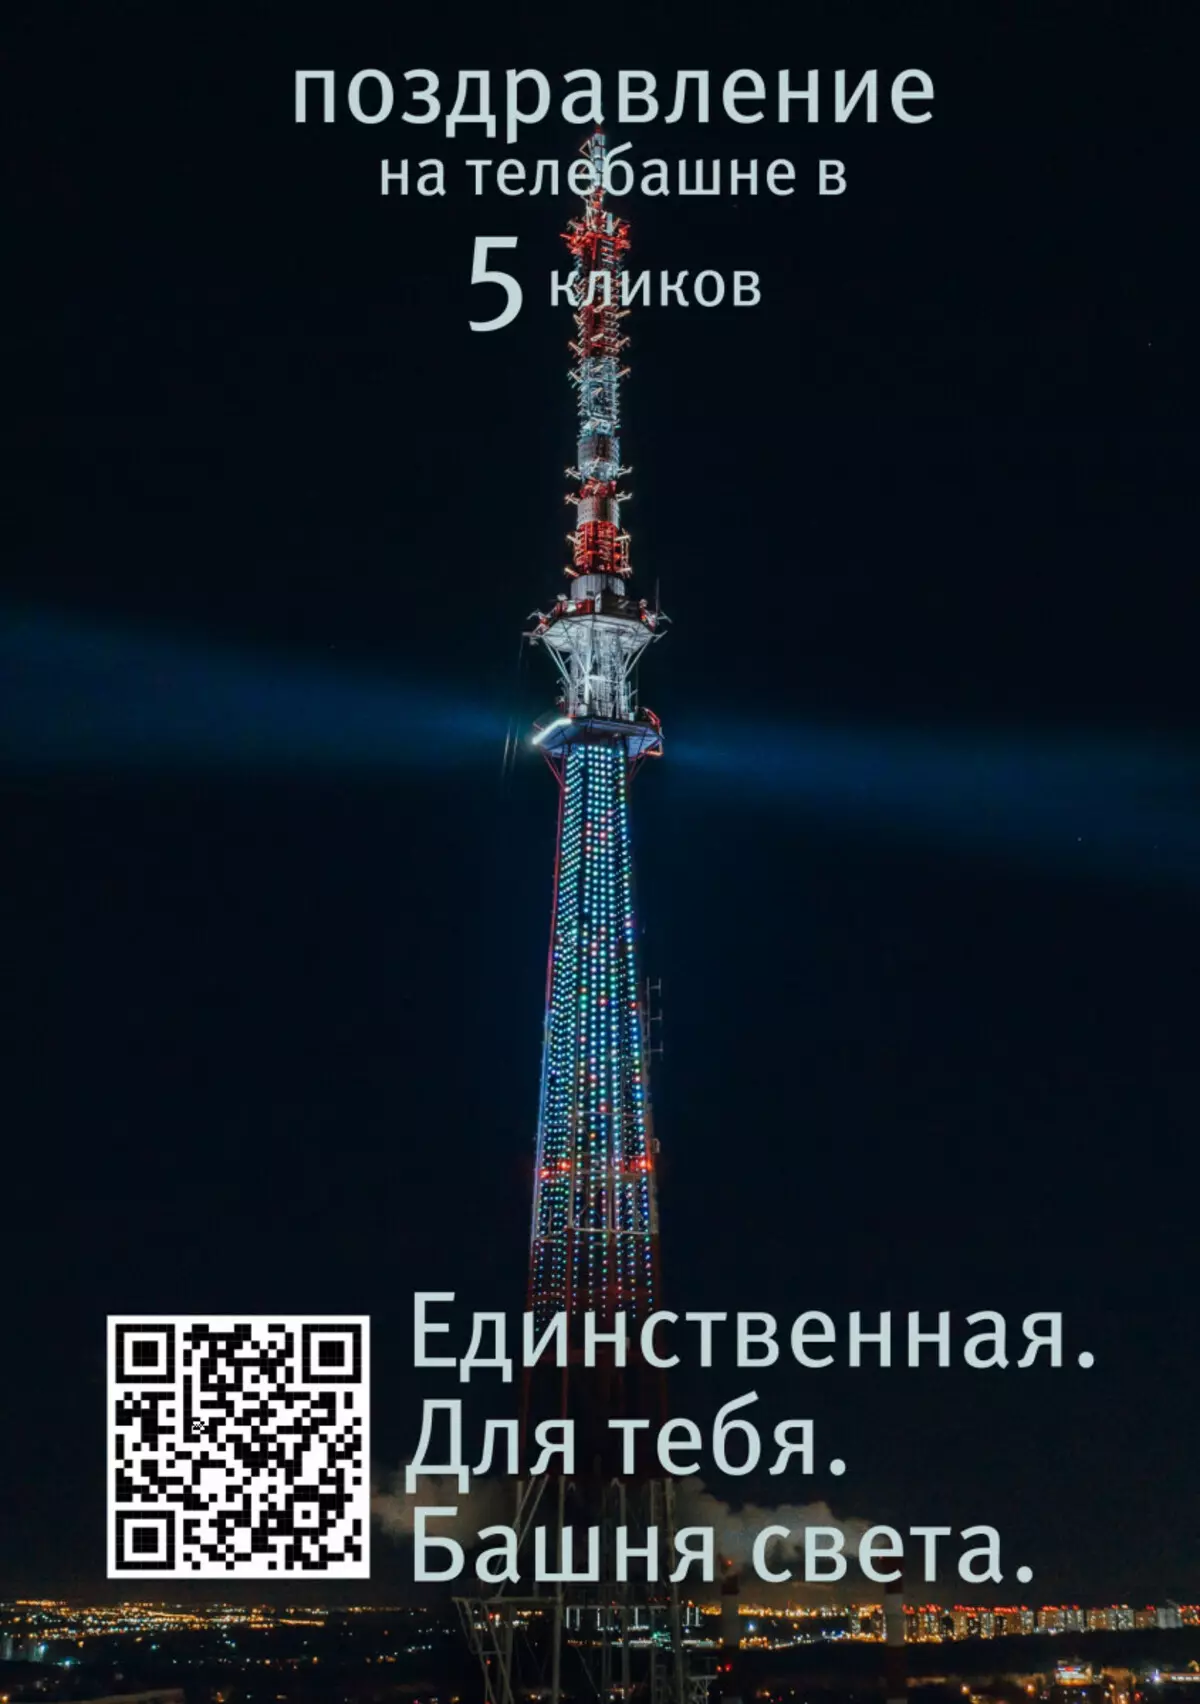 Nizhny Novgorod dikare li ser televîzyonê ronî bike 20952_1